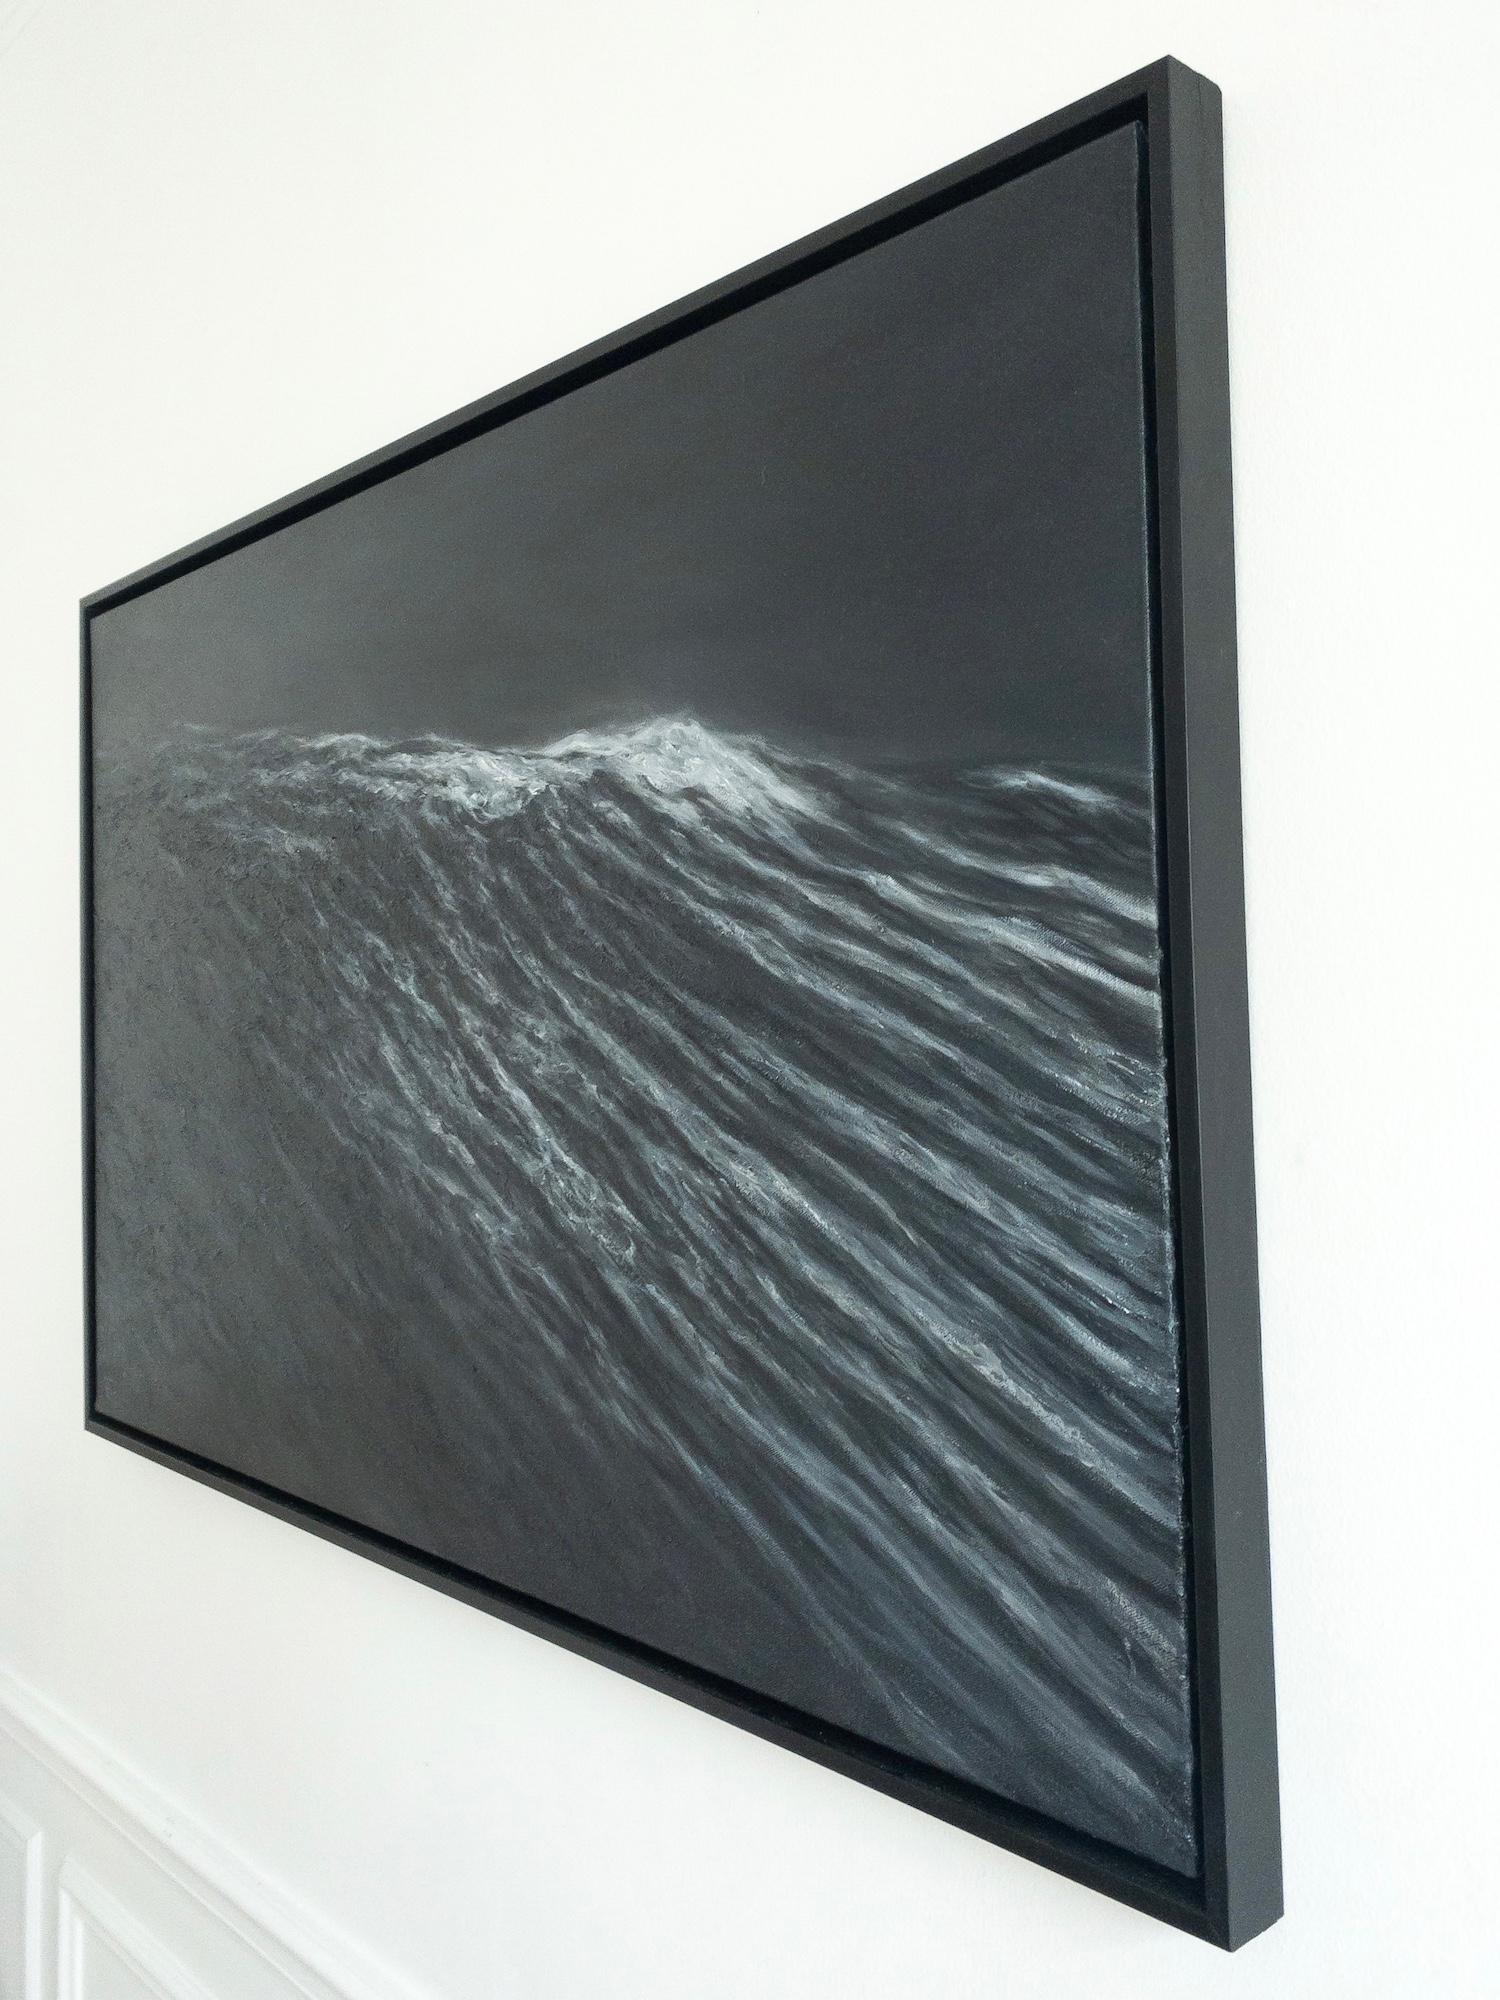 Requiem ist ein einzigartiges Ölgemälde auf Leinwand des zeitgenössischen Künstlers Franco Salas Borquez mit den Maßen 73 × 116 cm (28,7 × 45,7 in). Dieses Gemälde wird mit einem schwarzen Schattenbox-Rahmen verkauft. Die Maße des gerahmten